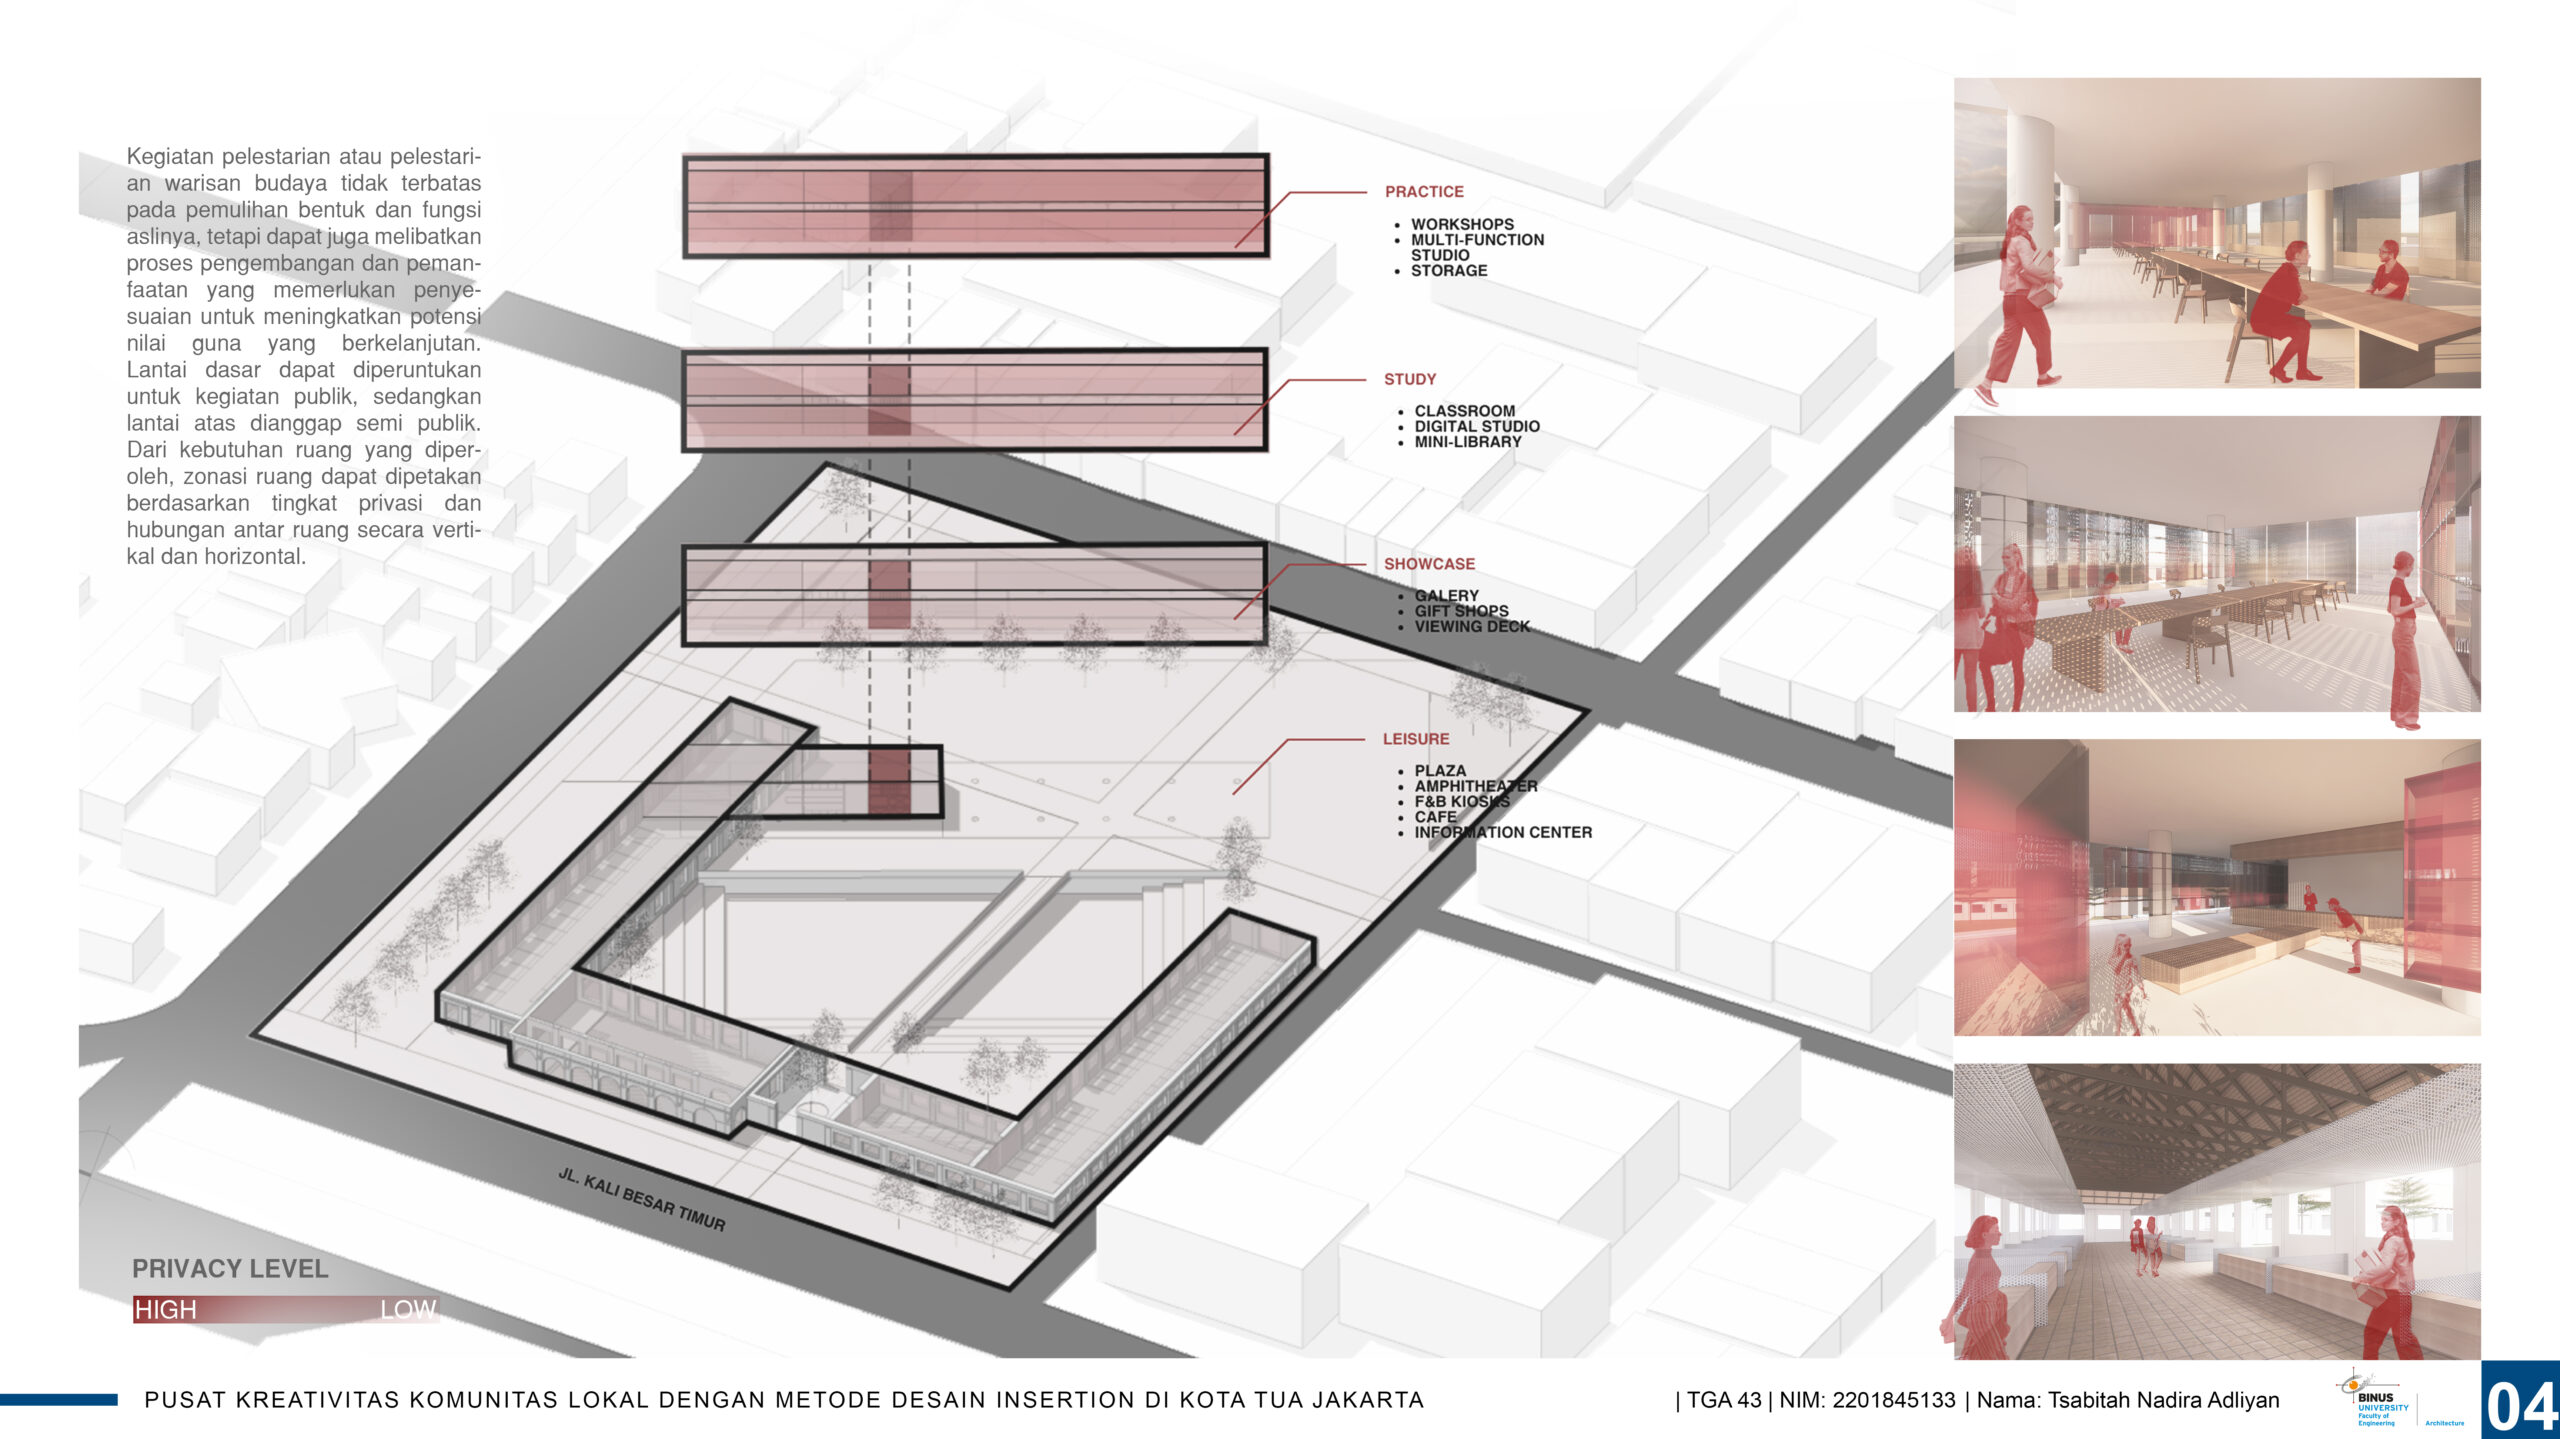 Pusat Kreatifitas Komunitas Lokal Dengan Metode Desain Insertion di Kota Tua Jakarta